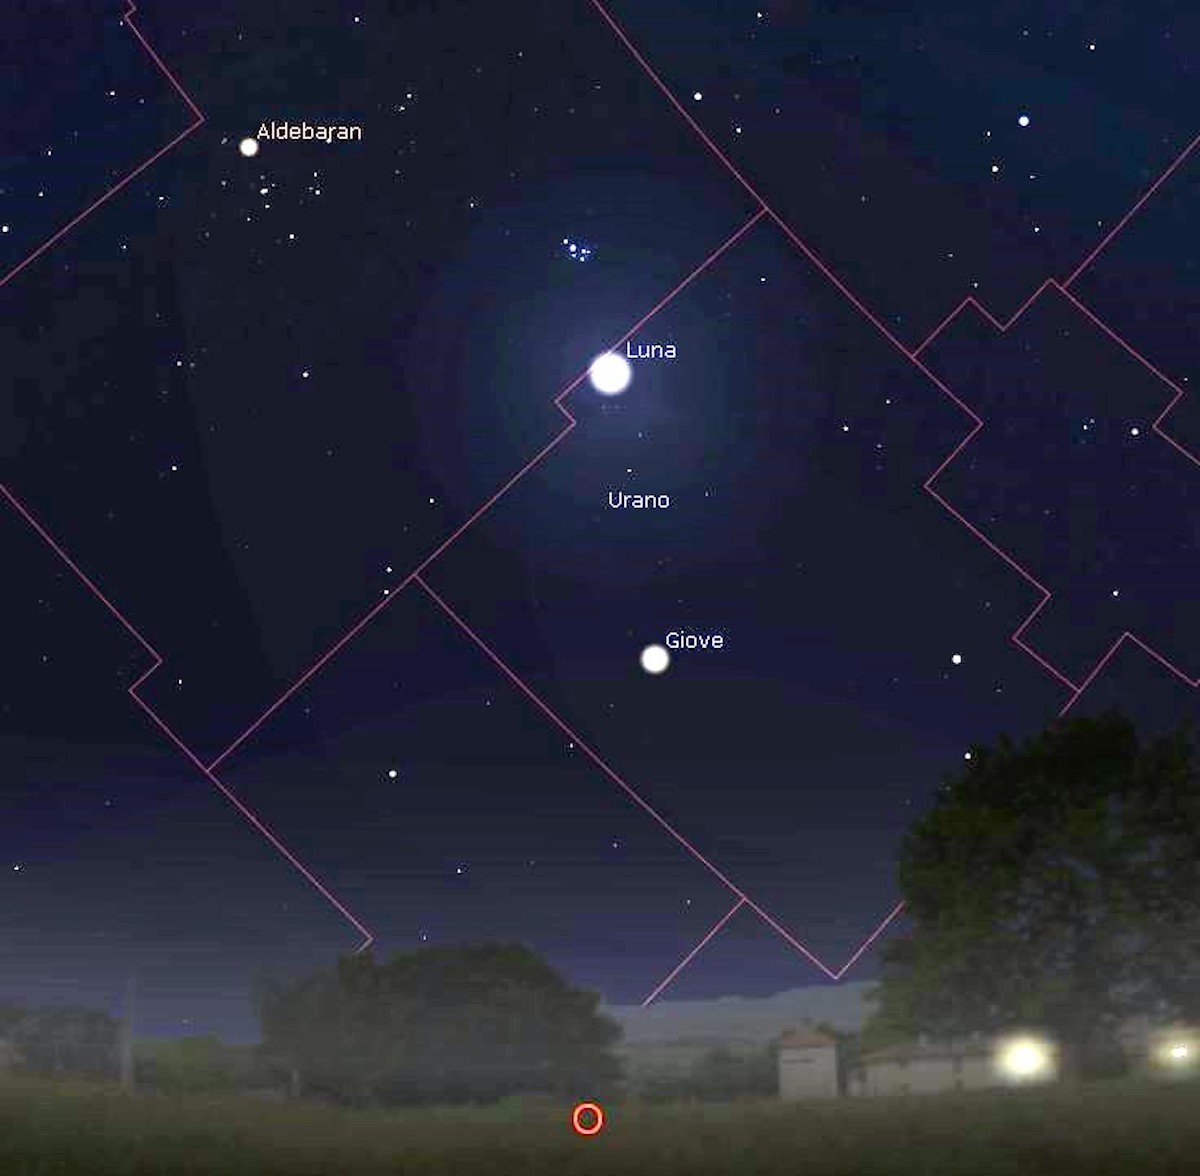 La congiunzione tra Luna e Giove del 14 marzo, visibile osservando il cielo a sudovest attorno alle ore 18.00. Immagine generata con il software Stellarium (https://stellarium.org)